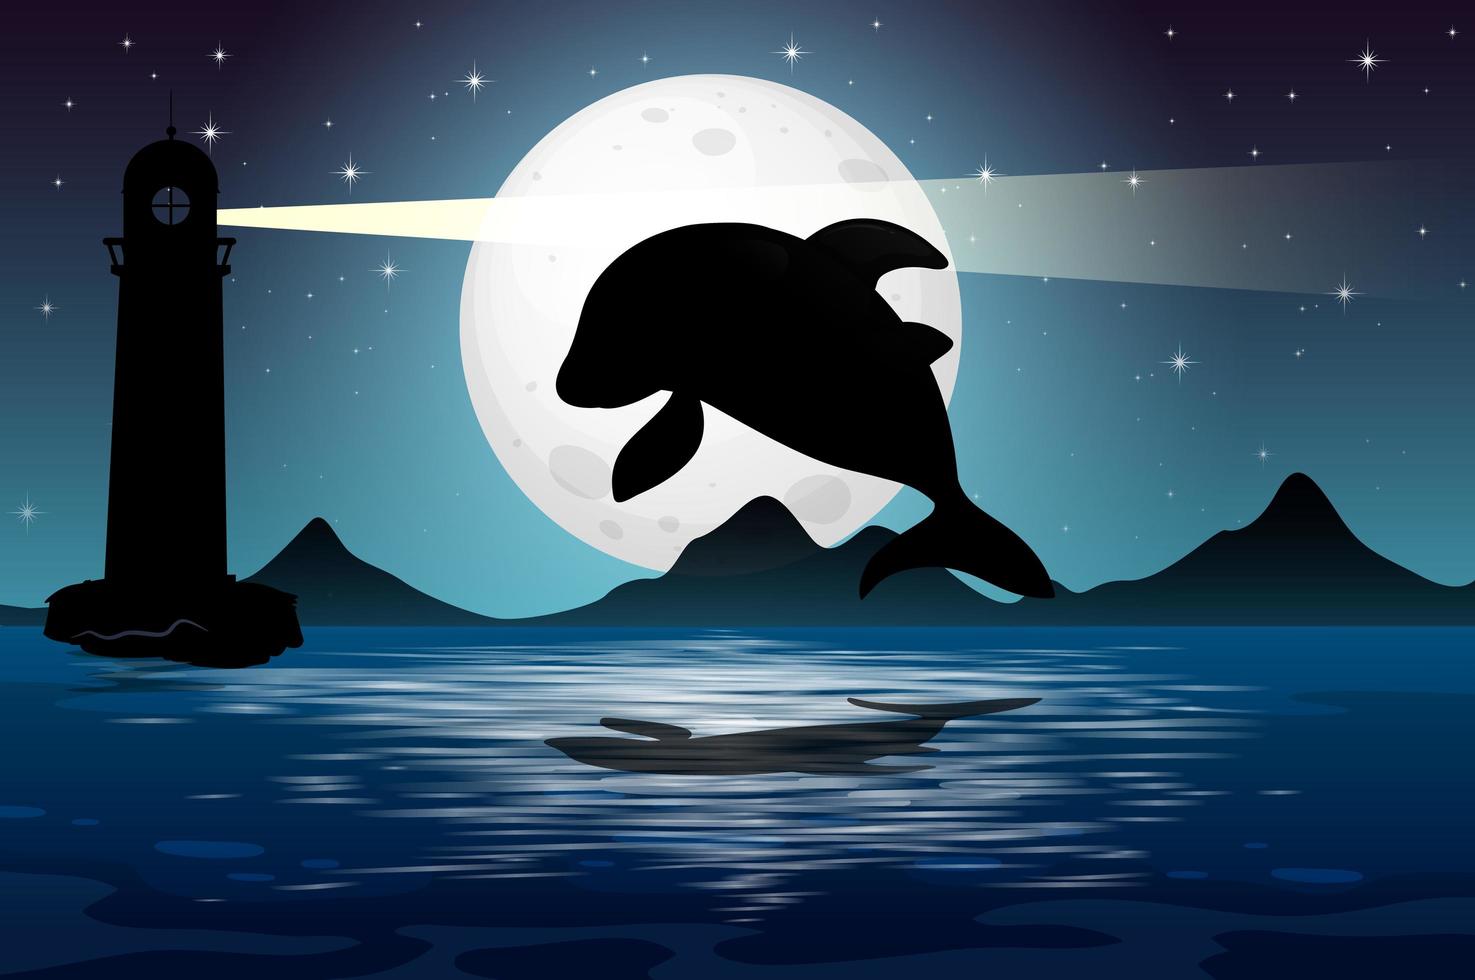 Dolphin in nature night scene silhouette vector